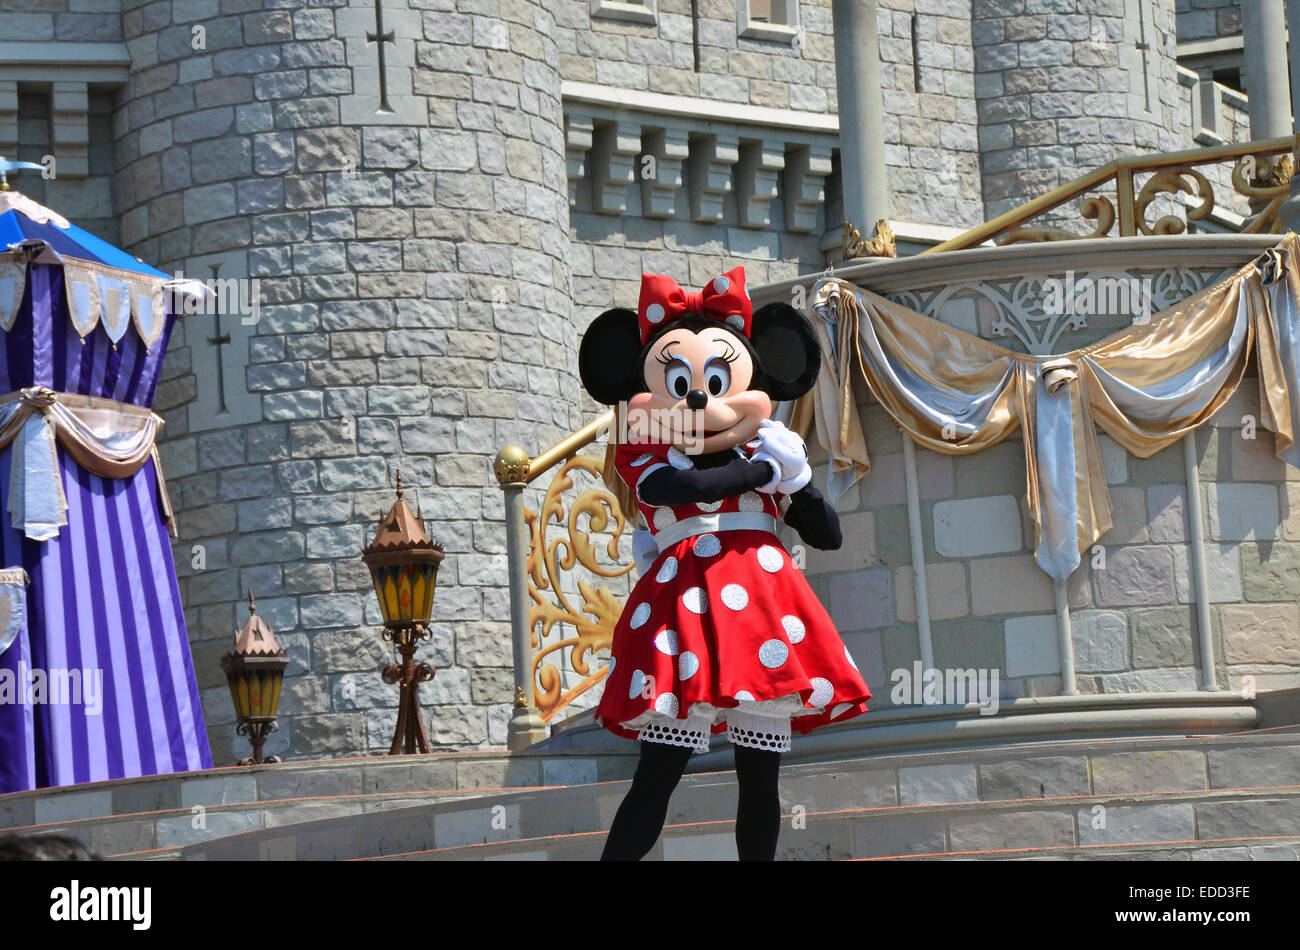 Minnie Mouse enfrente de Cinderella Castle en Magic Kingdom, Disney World Resort, Orlando, Florida. Foto de stock